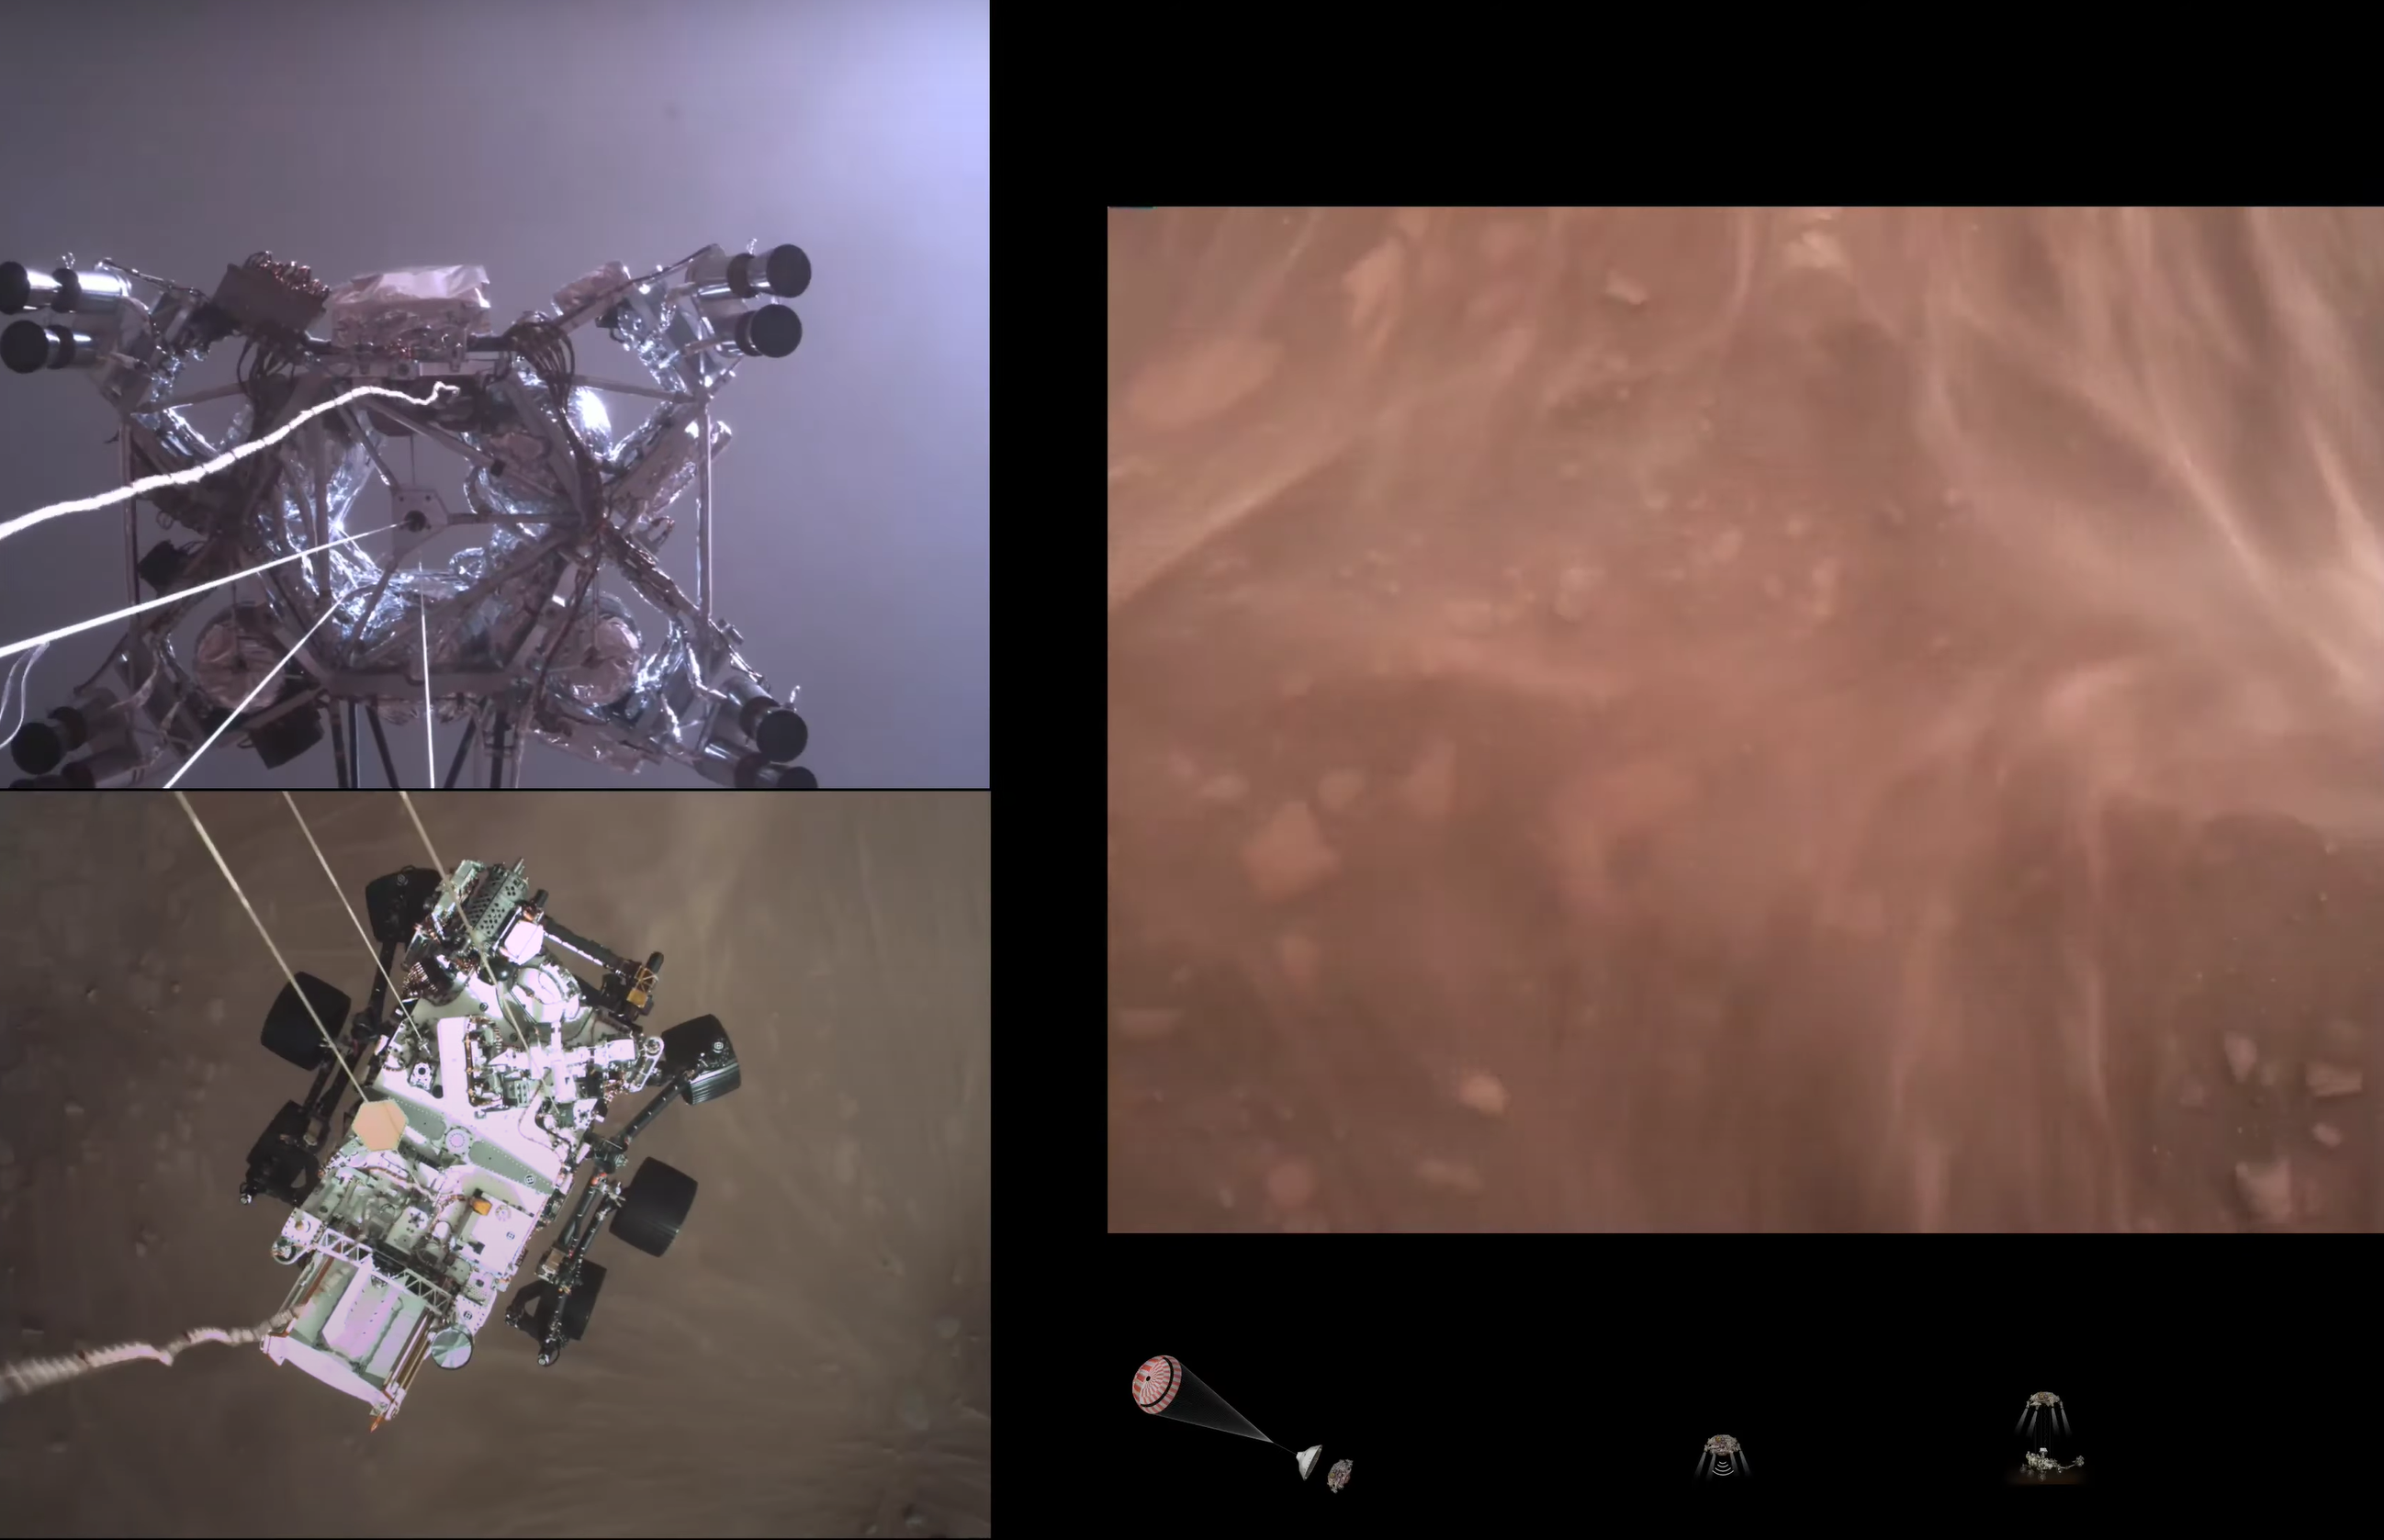 Lélegzetelállító videót tett közzé a NASA a Perseverance landolásáról a Marson